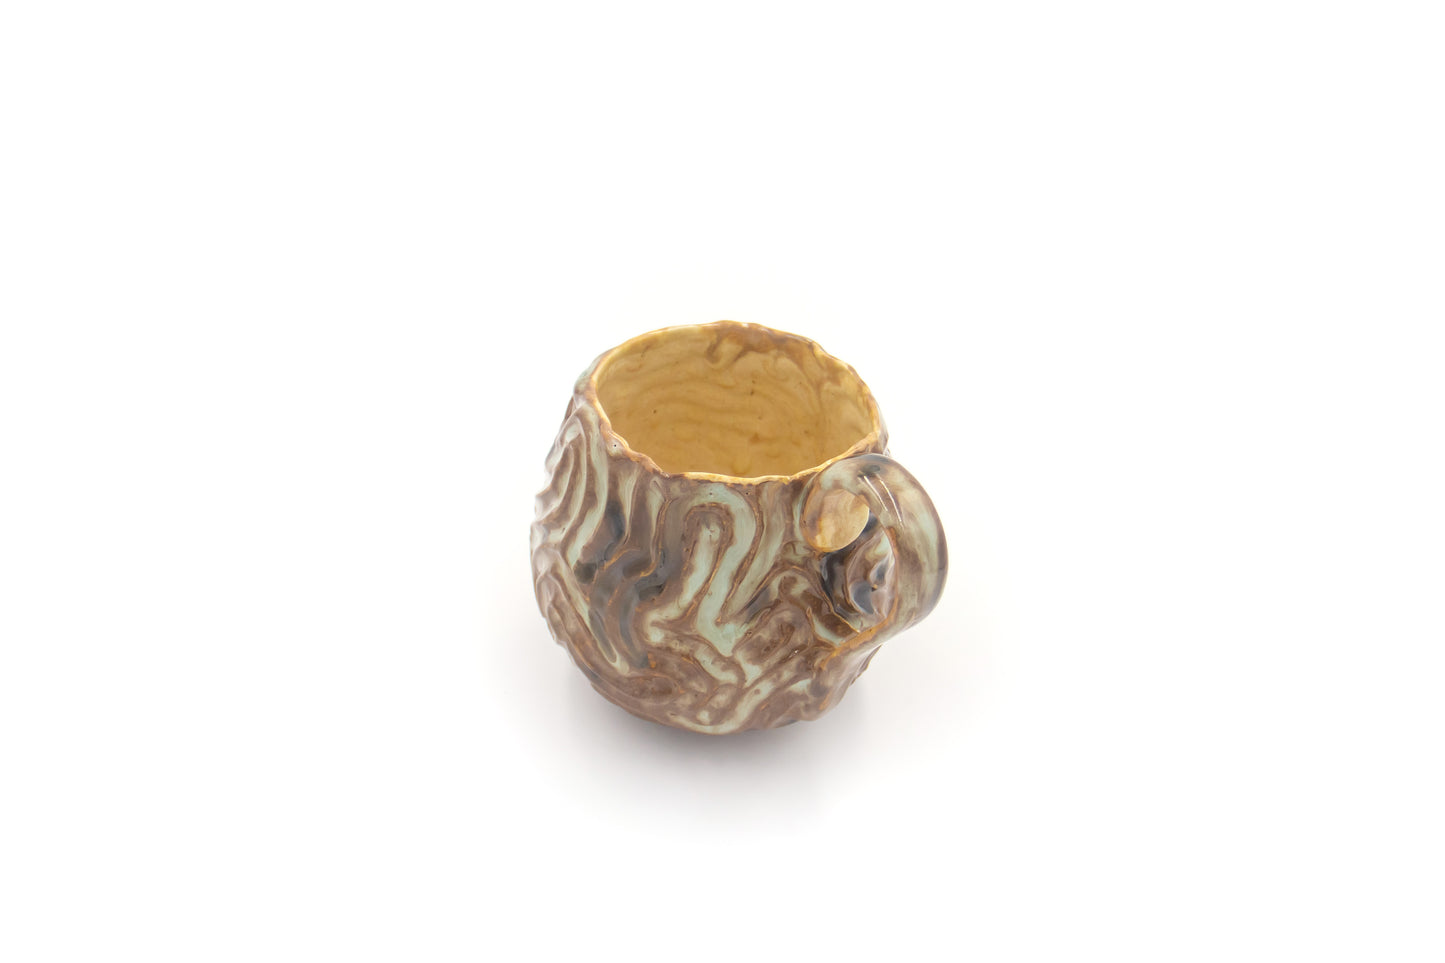 Kubek ceramiczny w kolorze brązowo-beżowym